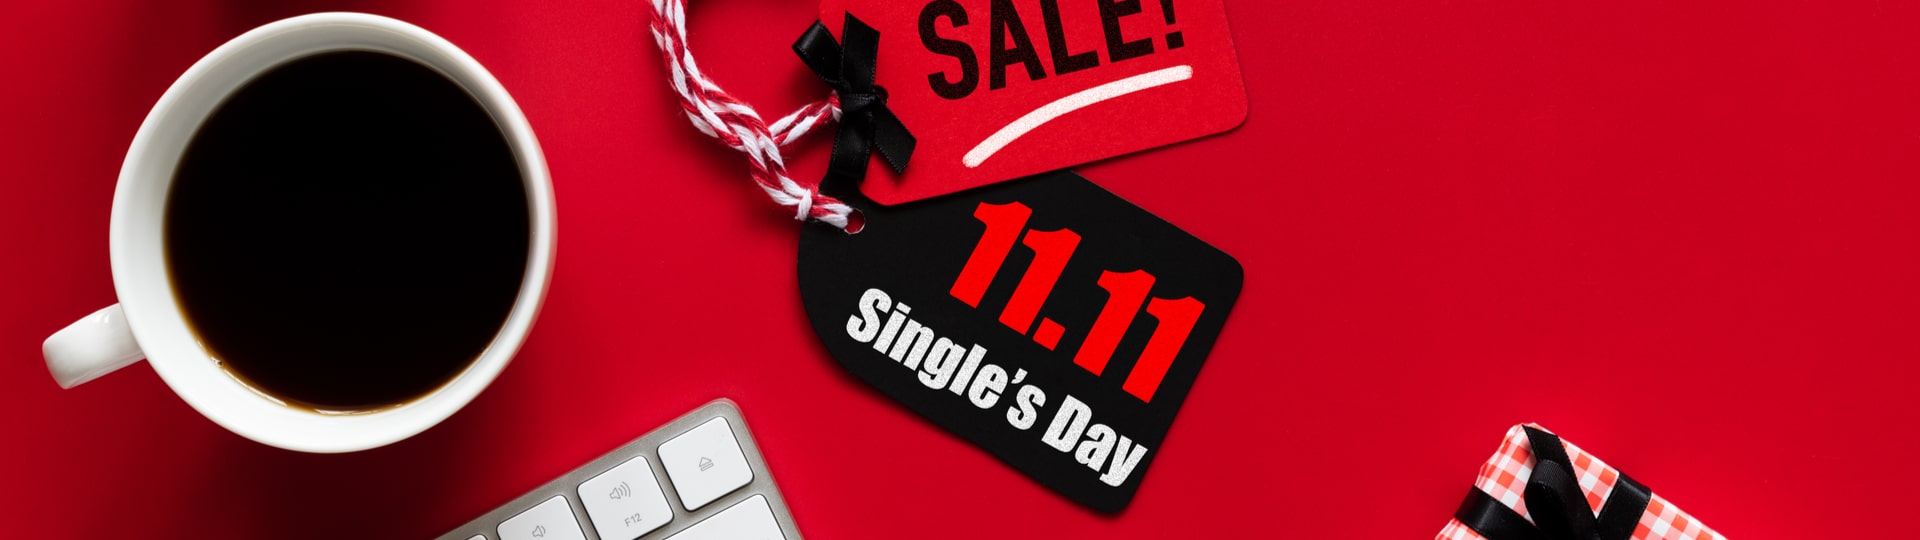 Čínským internetovým firmám klesly na Singles Day tržby